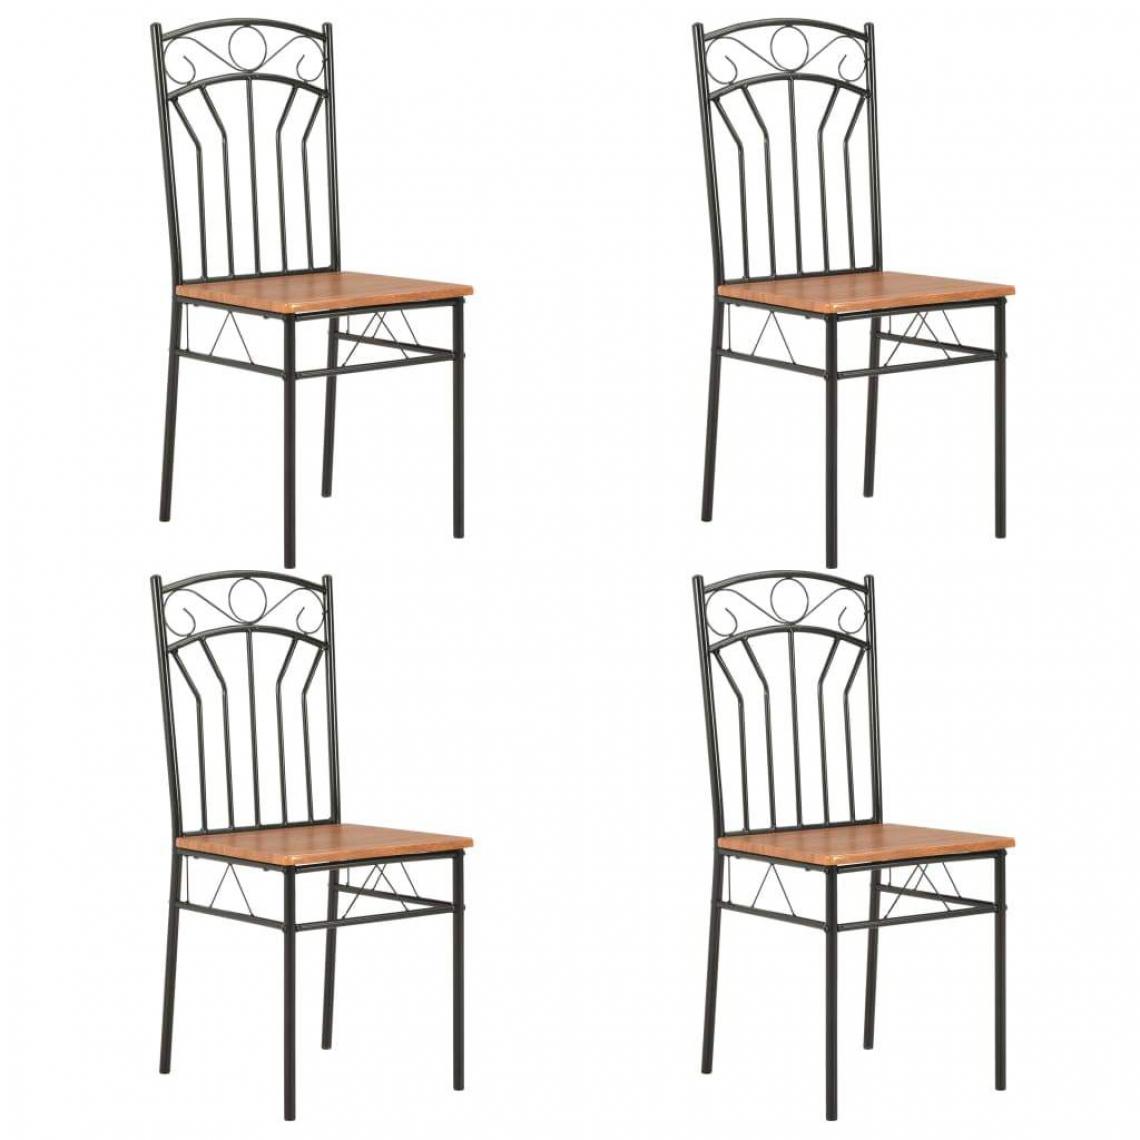 Decoshop26 - Lot de 4 chaises de salle à manger cuisine design classique marron MDF CDS021694 - Chaises